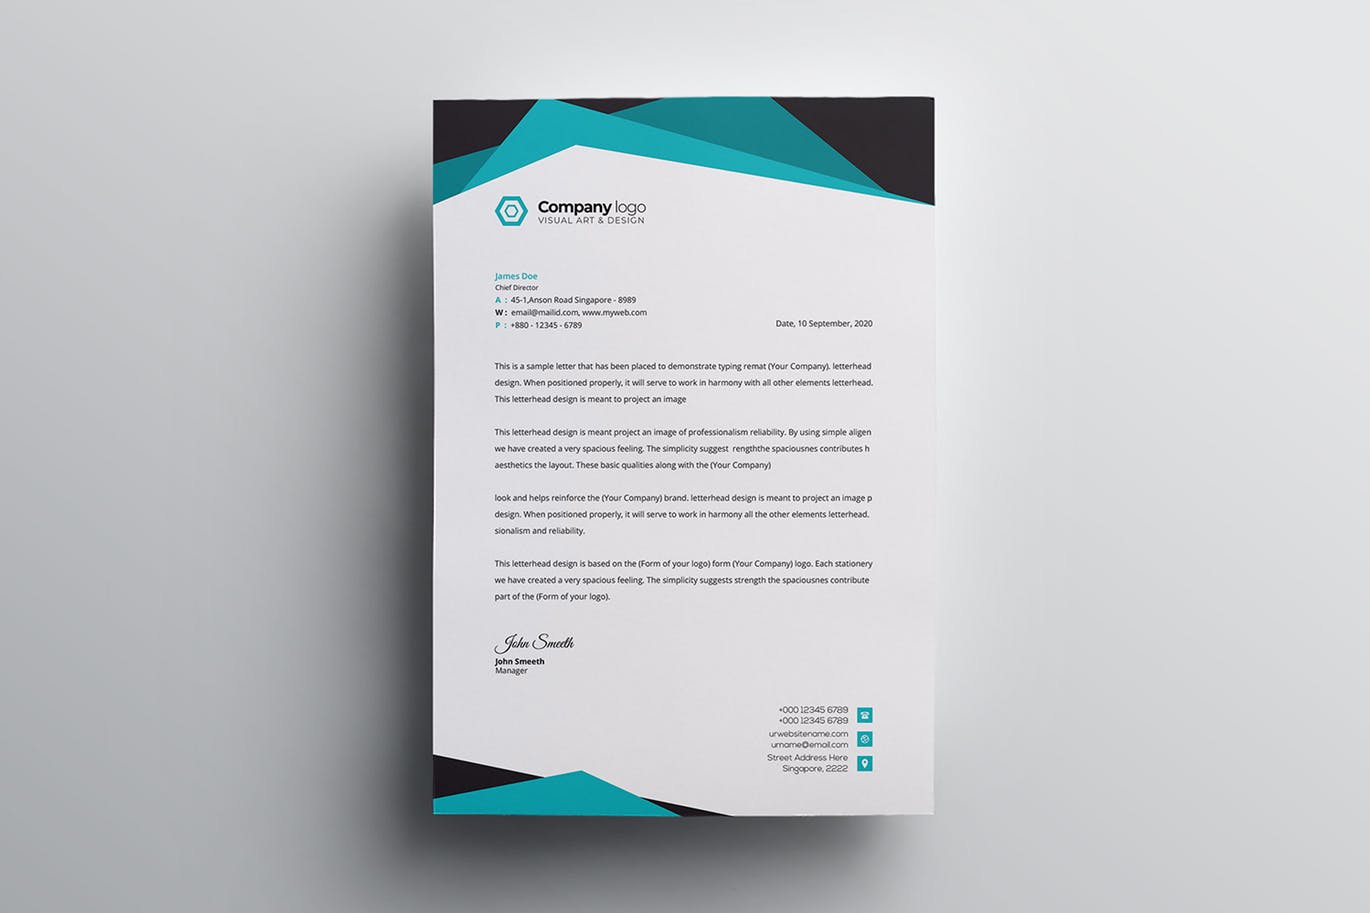 信息科技企业信封设计模板v2 Letterhead插图(4)